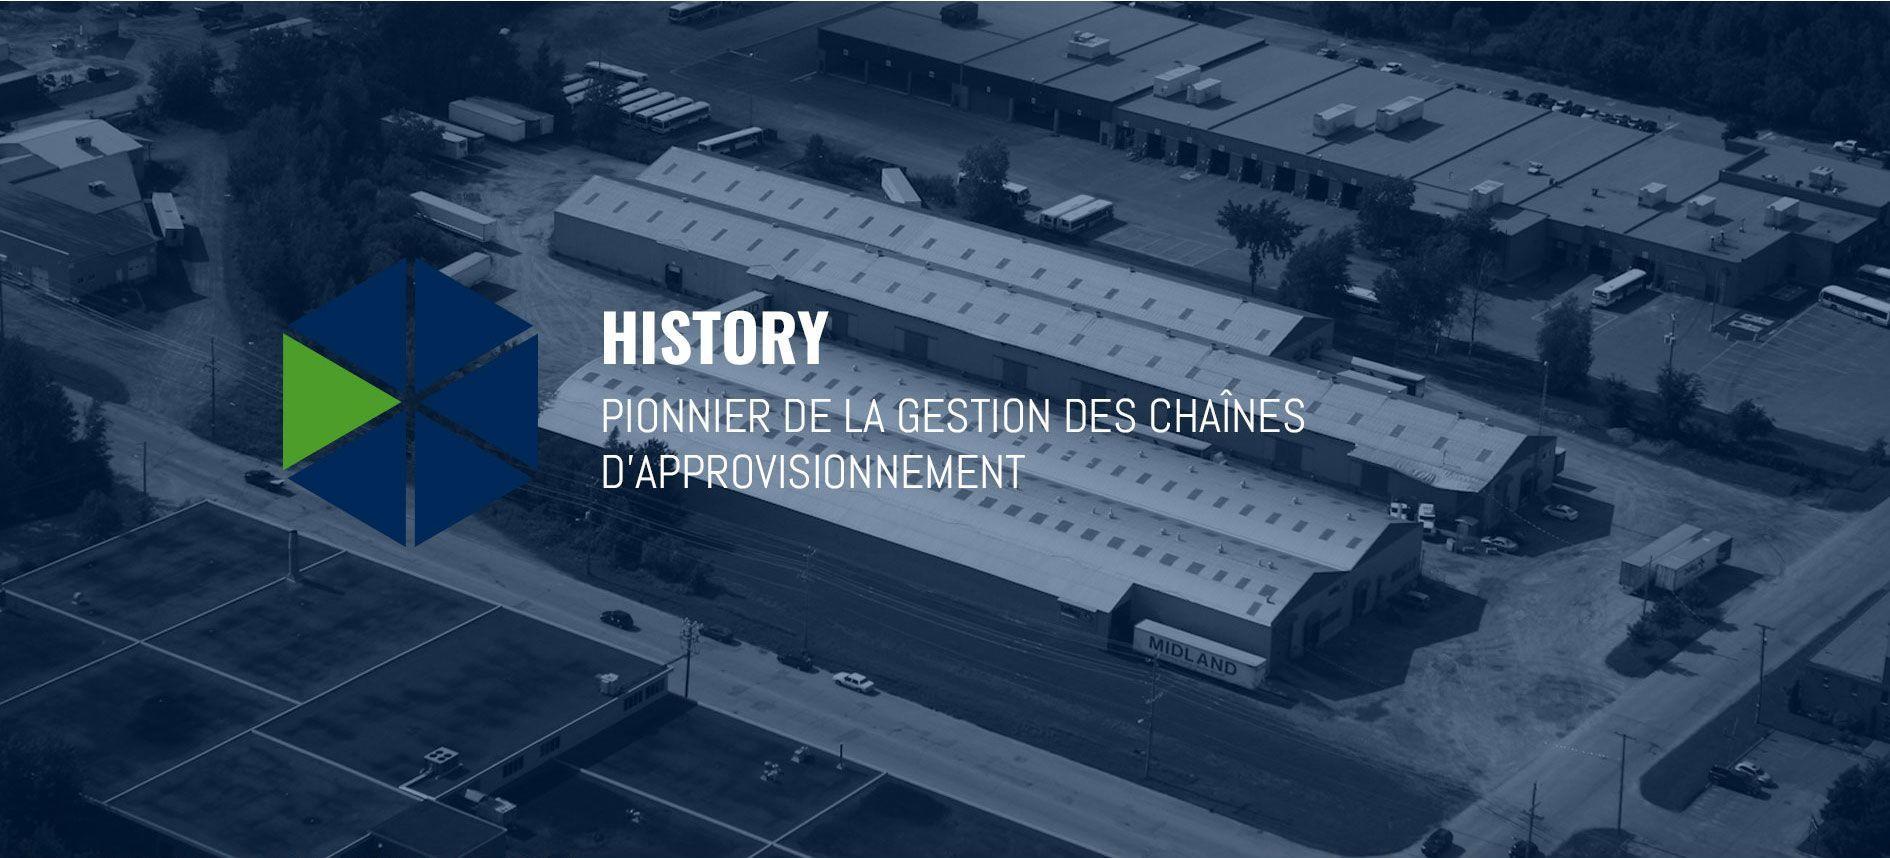 Belley history - Histoire de Belley